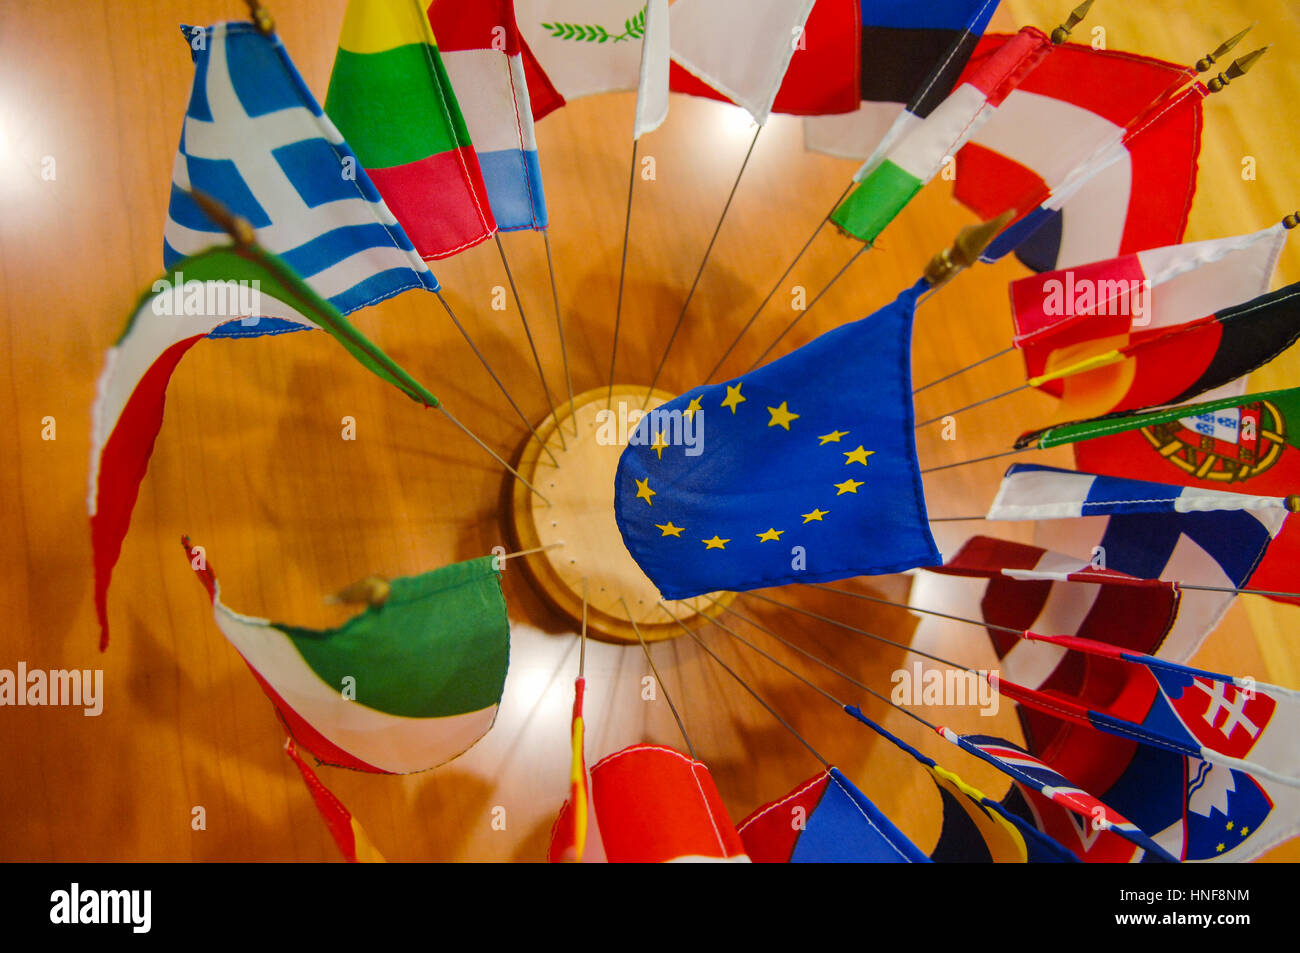 Illustrattion de drapeaux des pays membres de l'Union européenne Banque D'Images